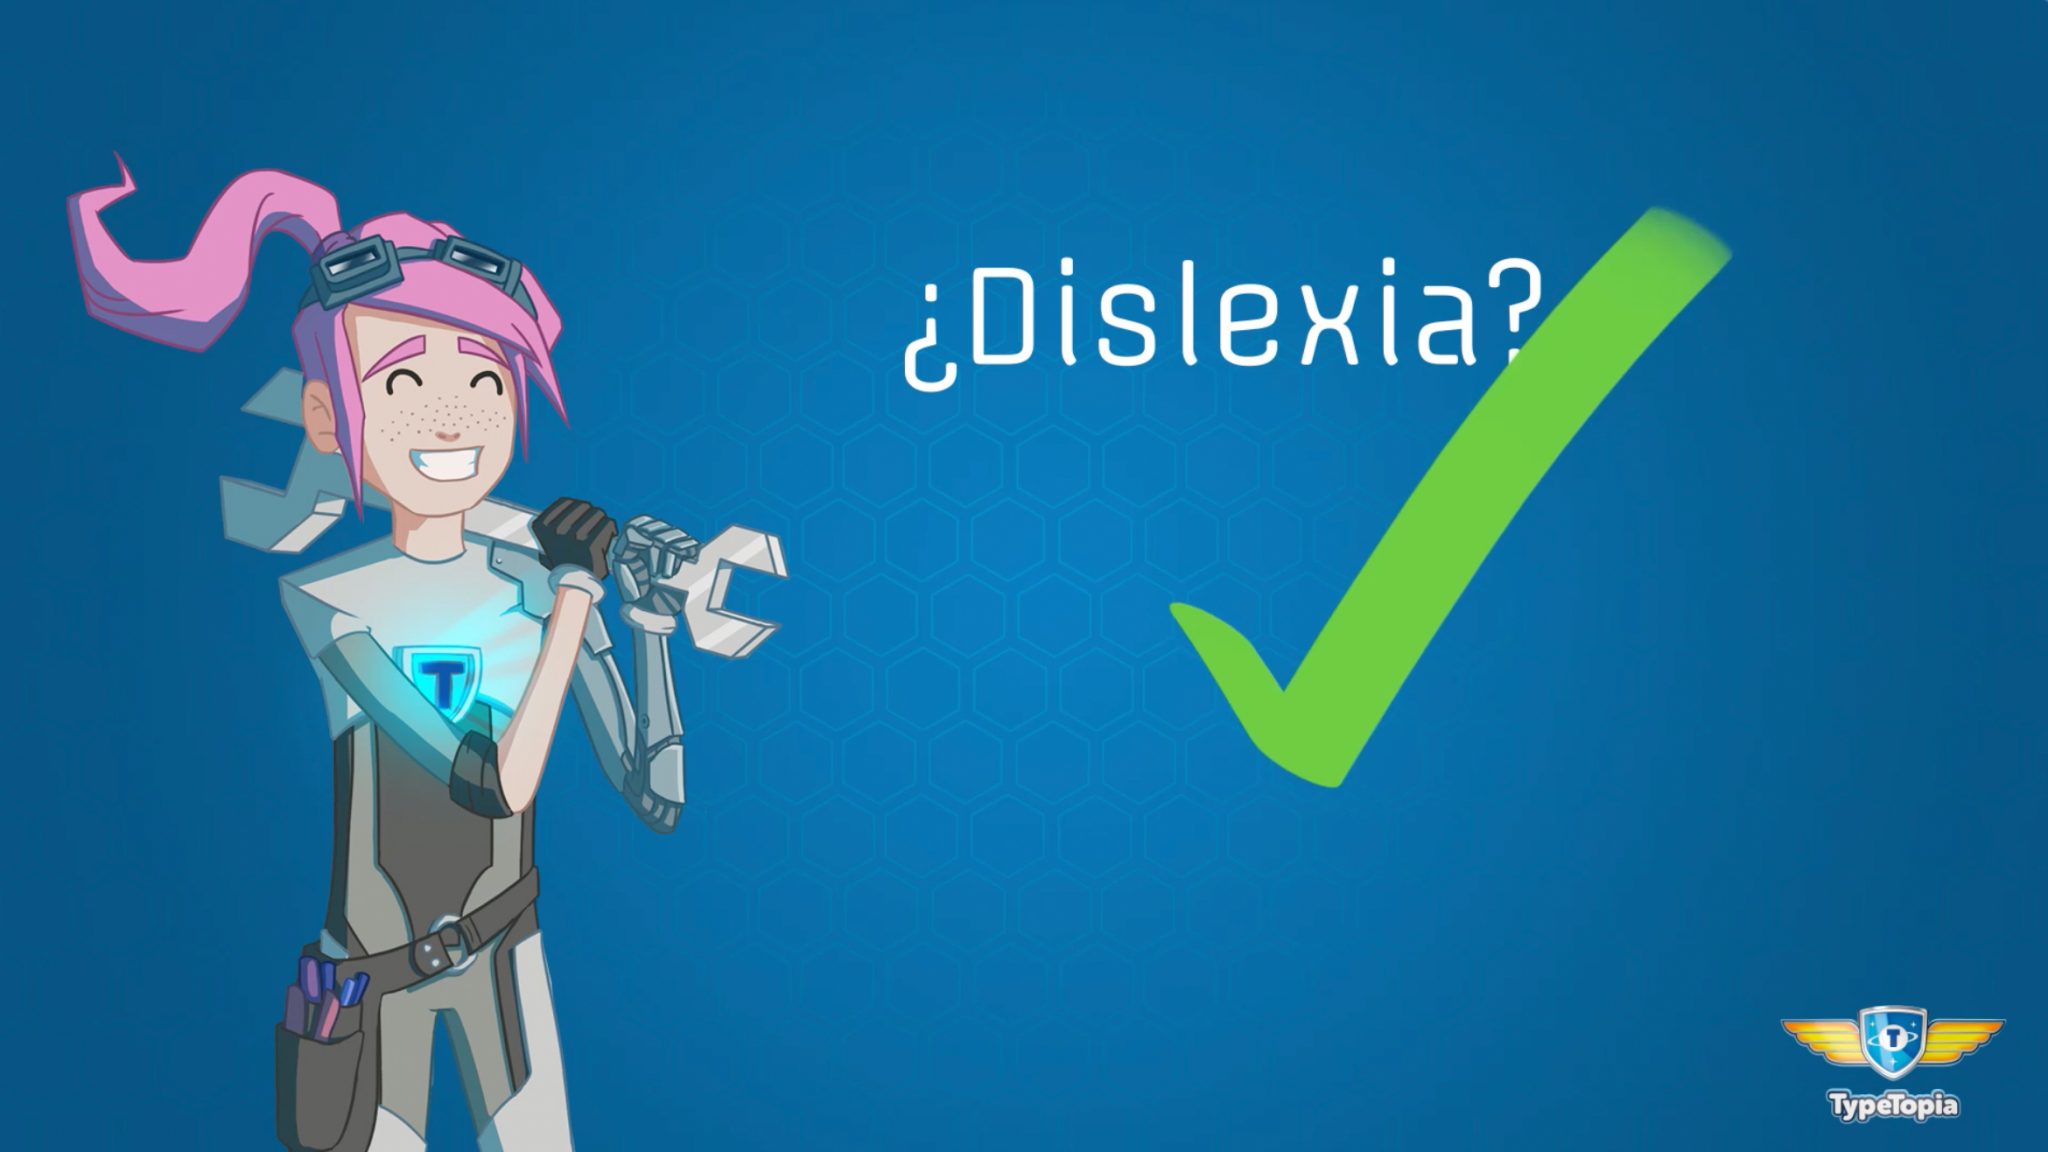 Vídeo sobre la dislexia y el curso de mecanografía Typetopia